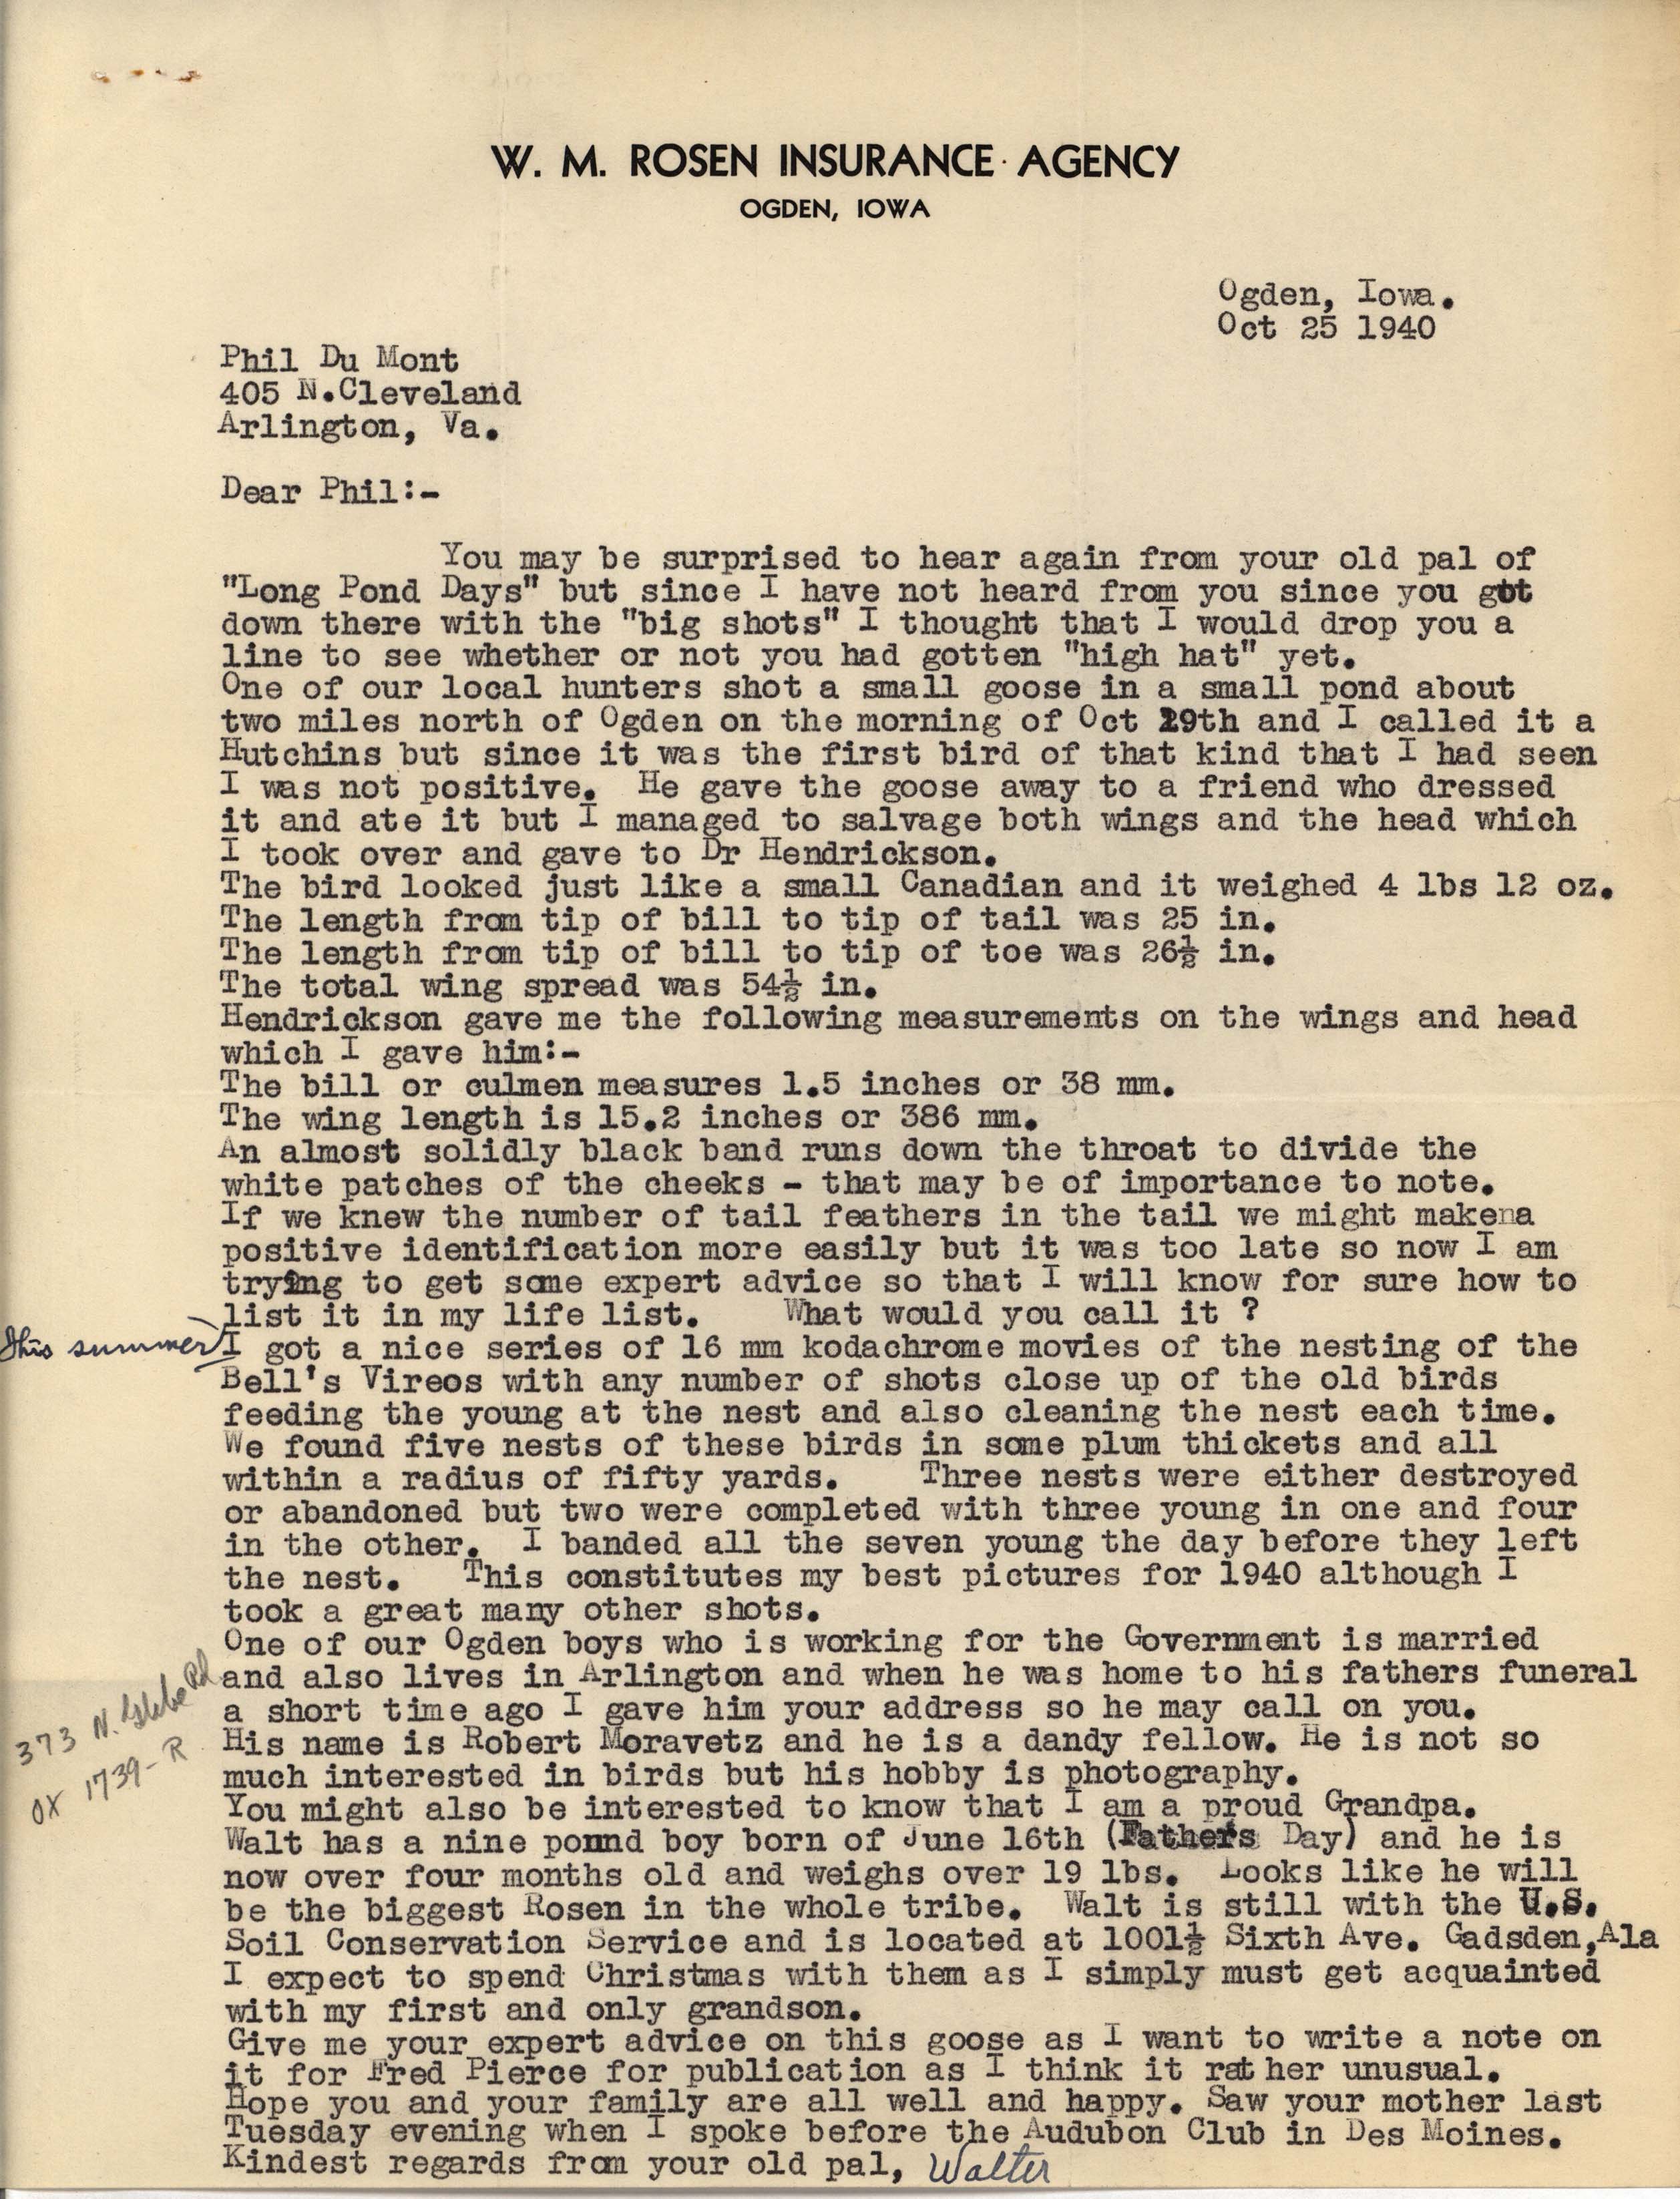 Walter Rosene letter to Philip DuMont regarding goose identification, October 25, 1940